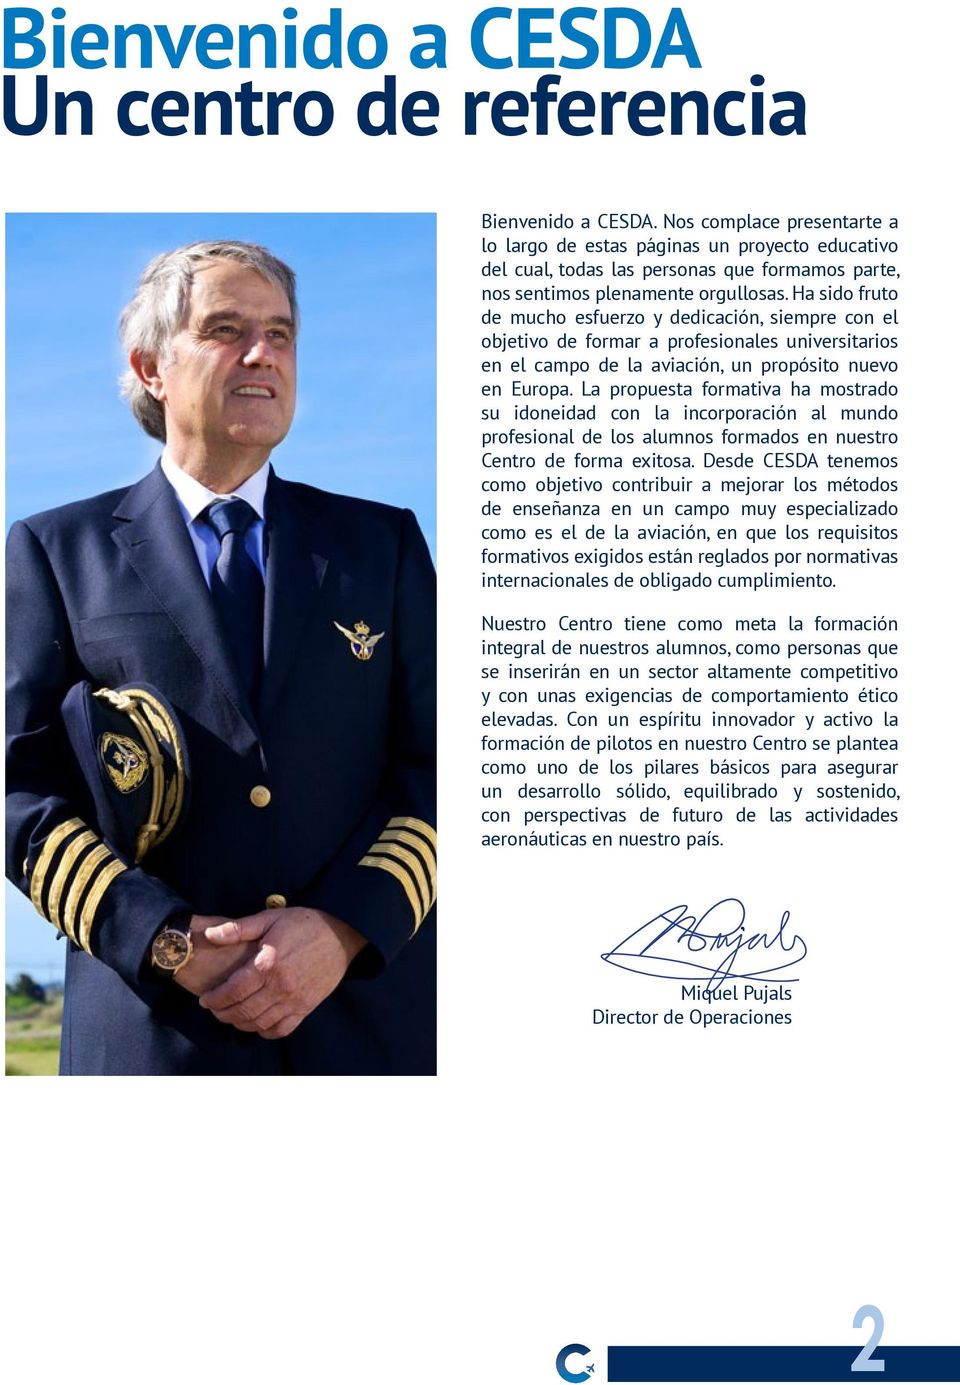 Ha sido fruto de mucho esfuerzo y dedicación, siempre con el objetivo de formar a profesionales universitarios en el campo de la aviación, un propósito nuevo en Europa.